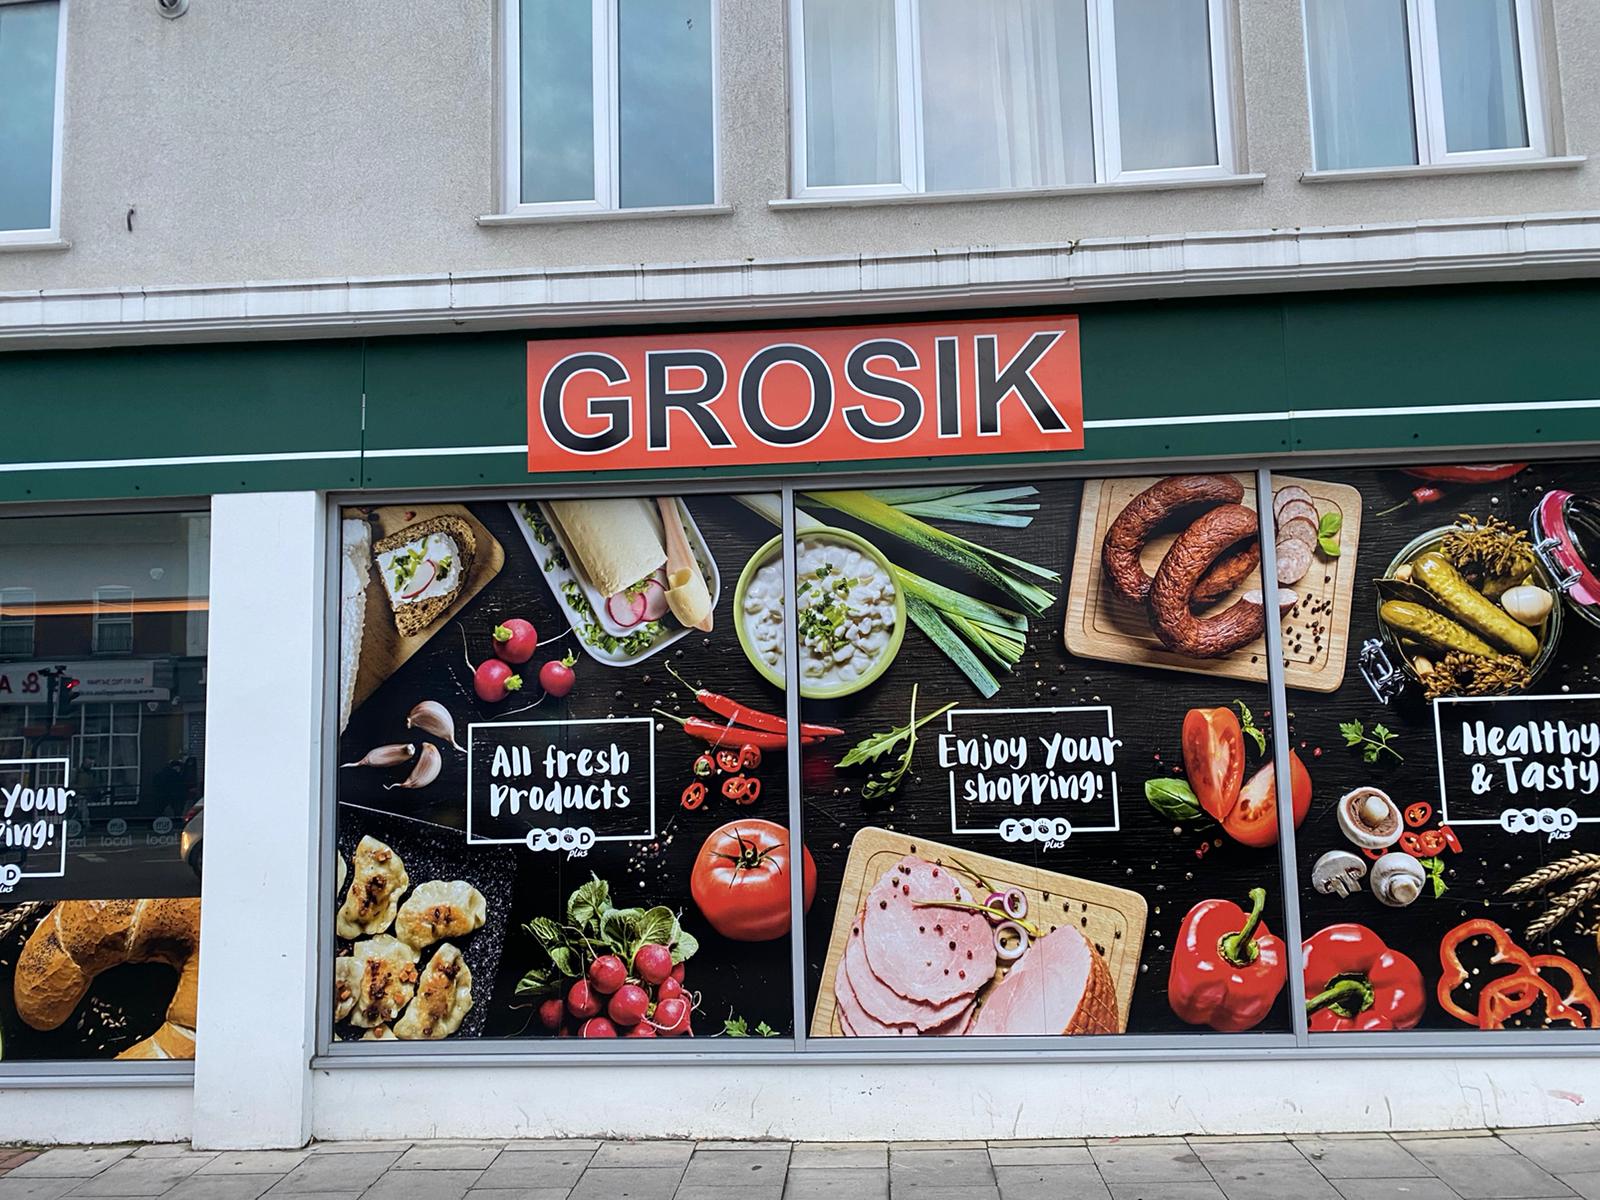 Grosik shop sign